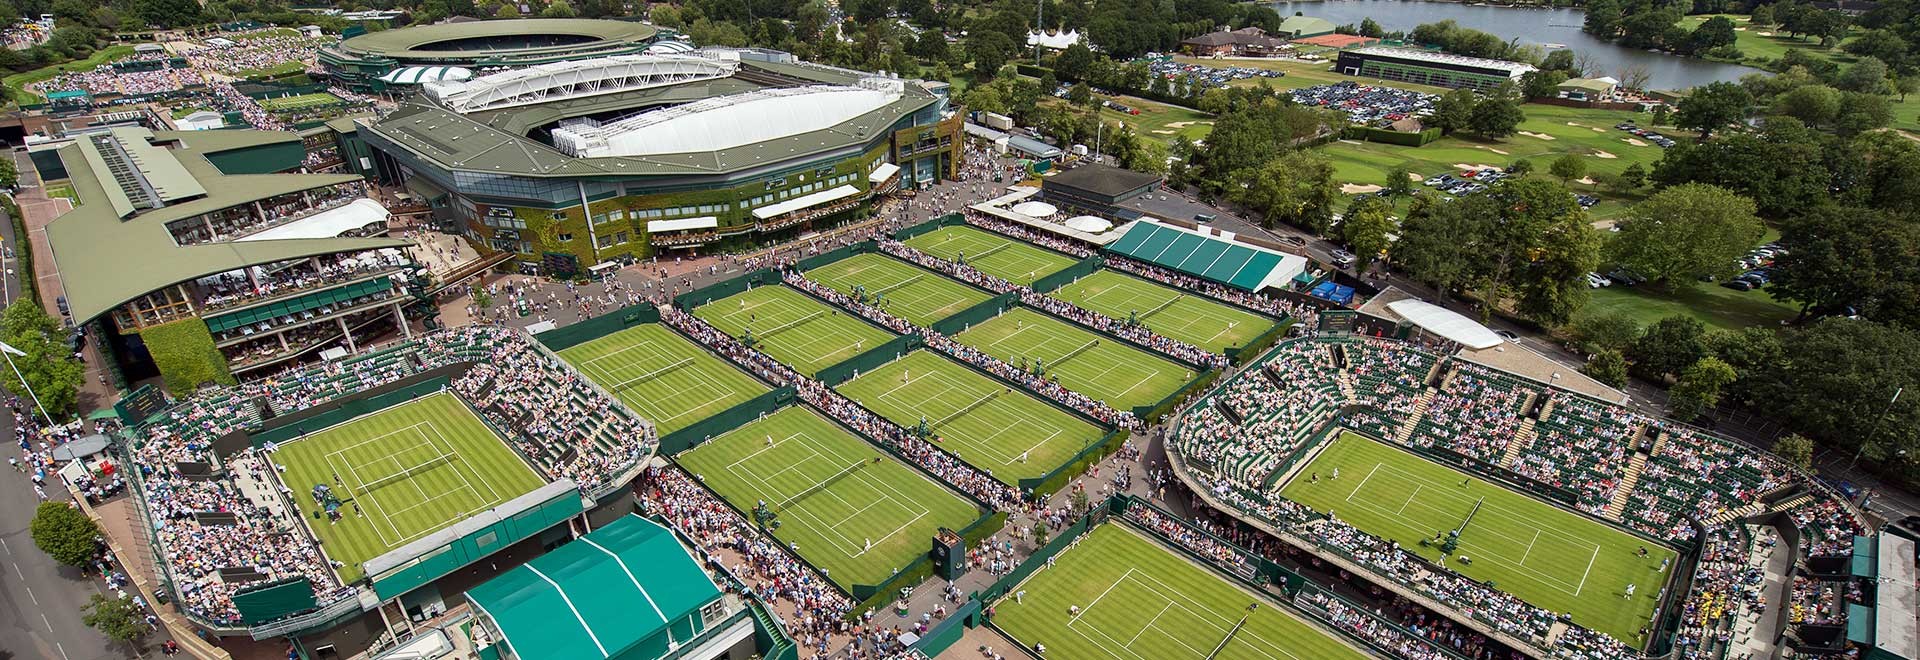 Wimbledon 2017: Tennis Packages - The Championships, Wimbledon